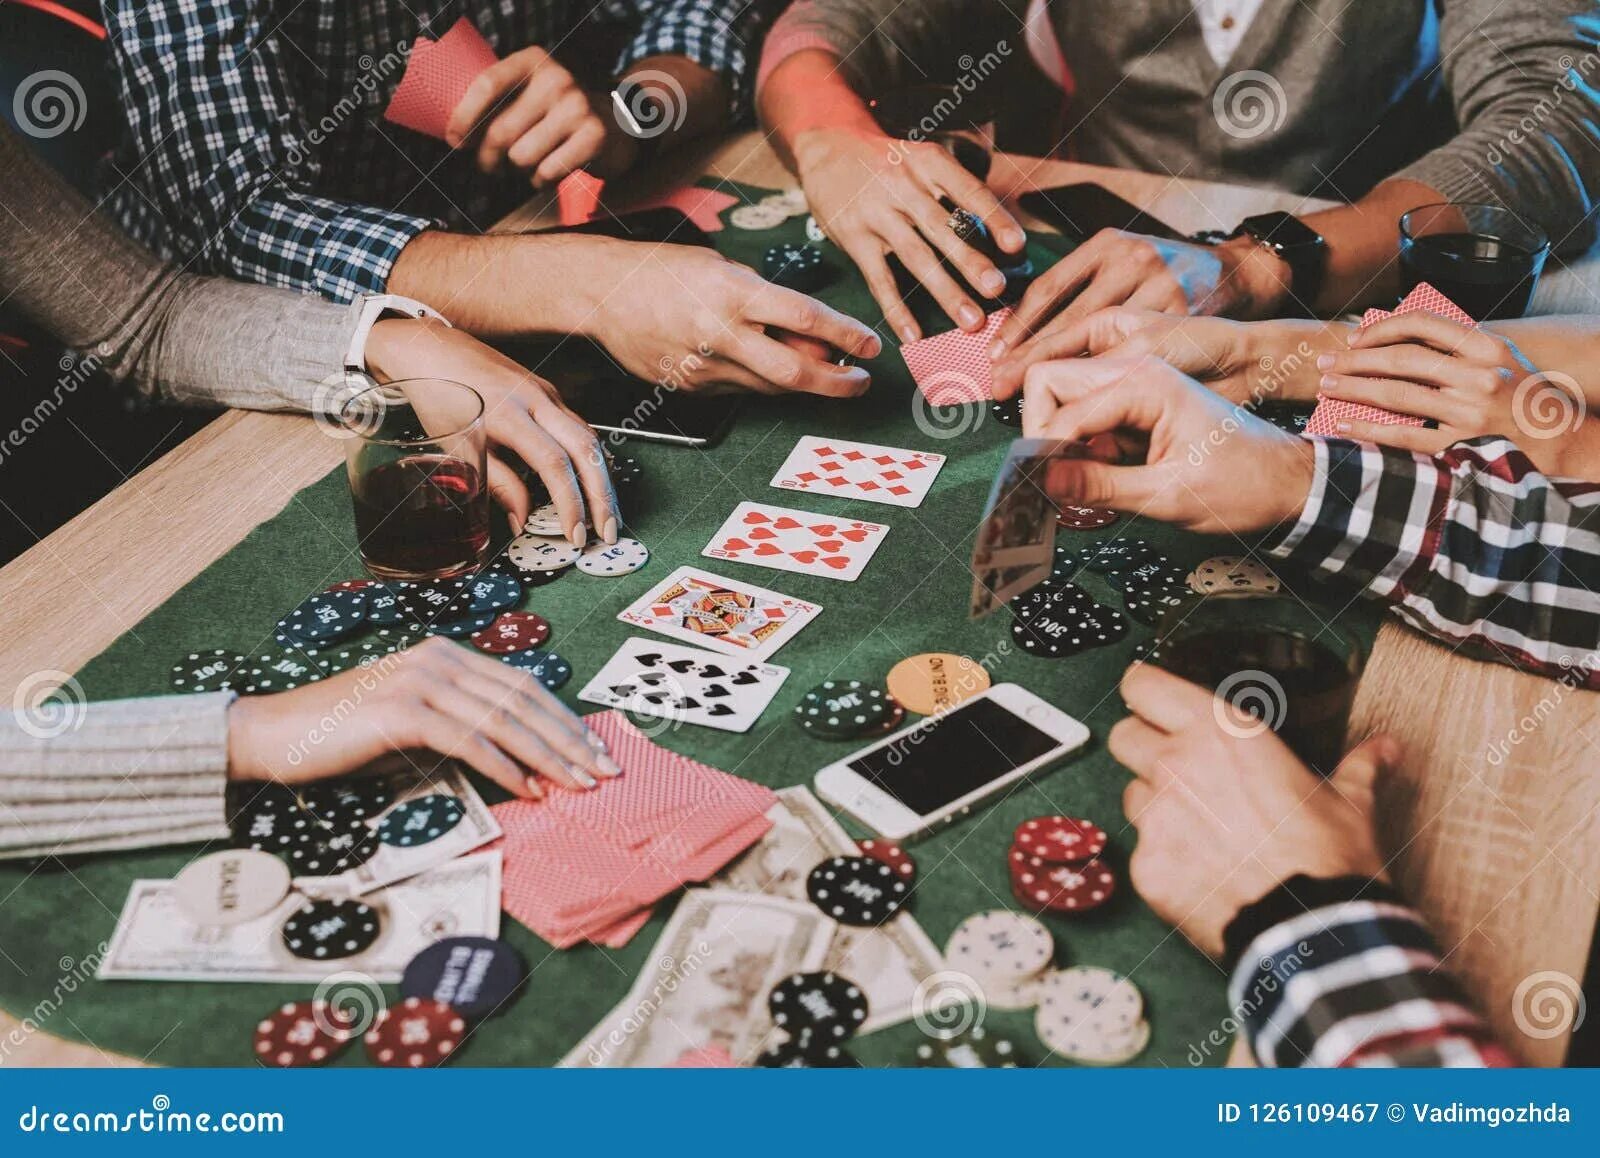 Люди играющие в Покер. Домашний Покер. Покер люди за столом. Люди играющие в карты.